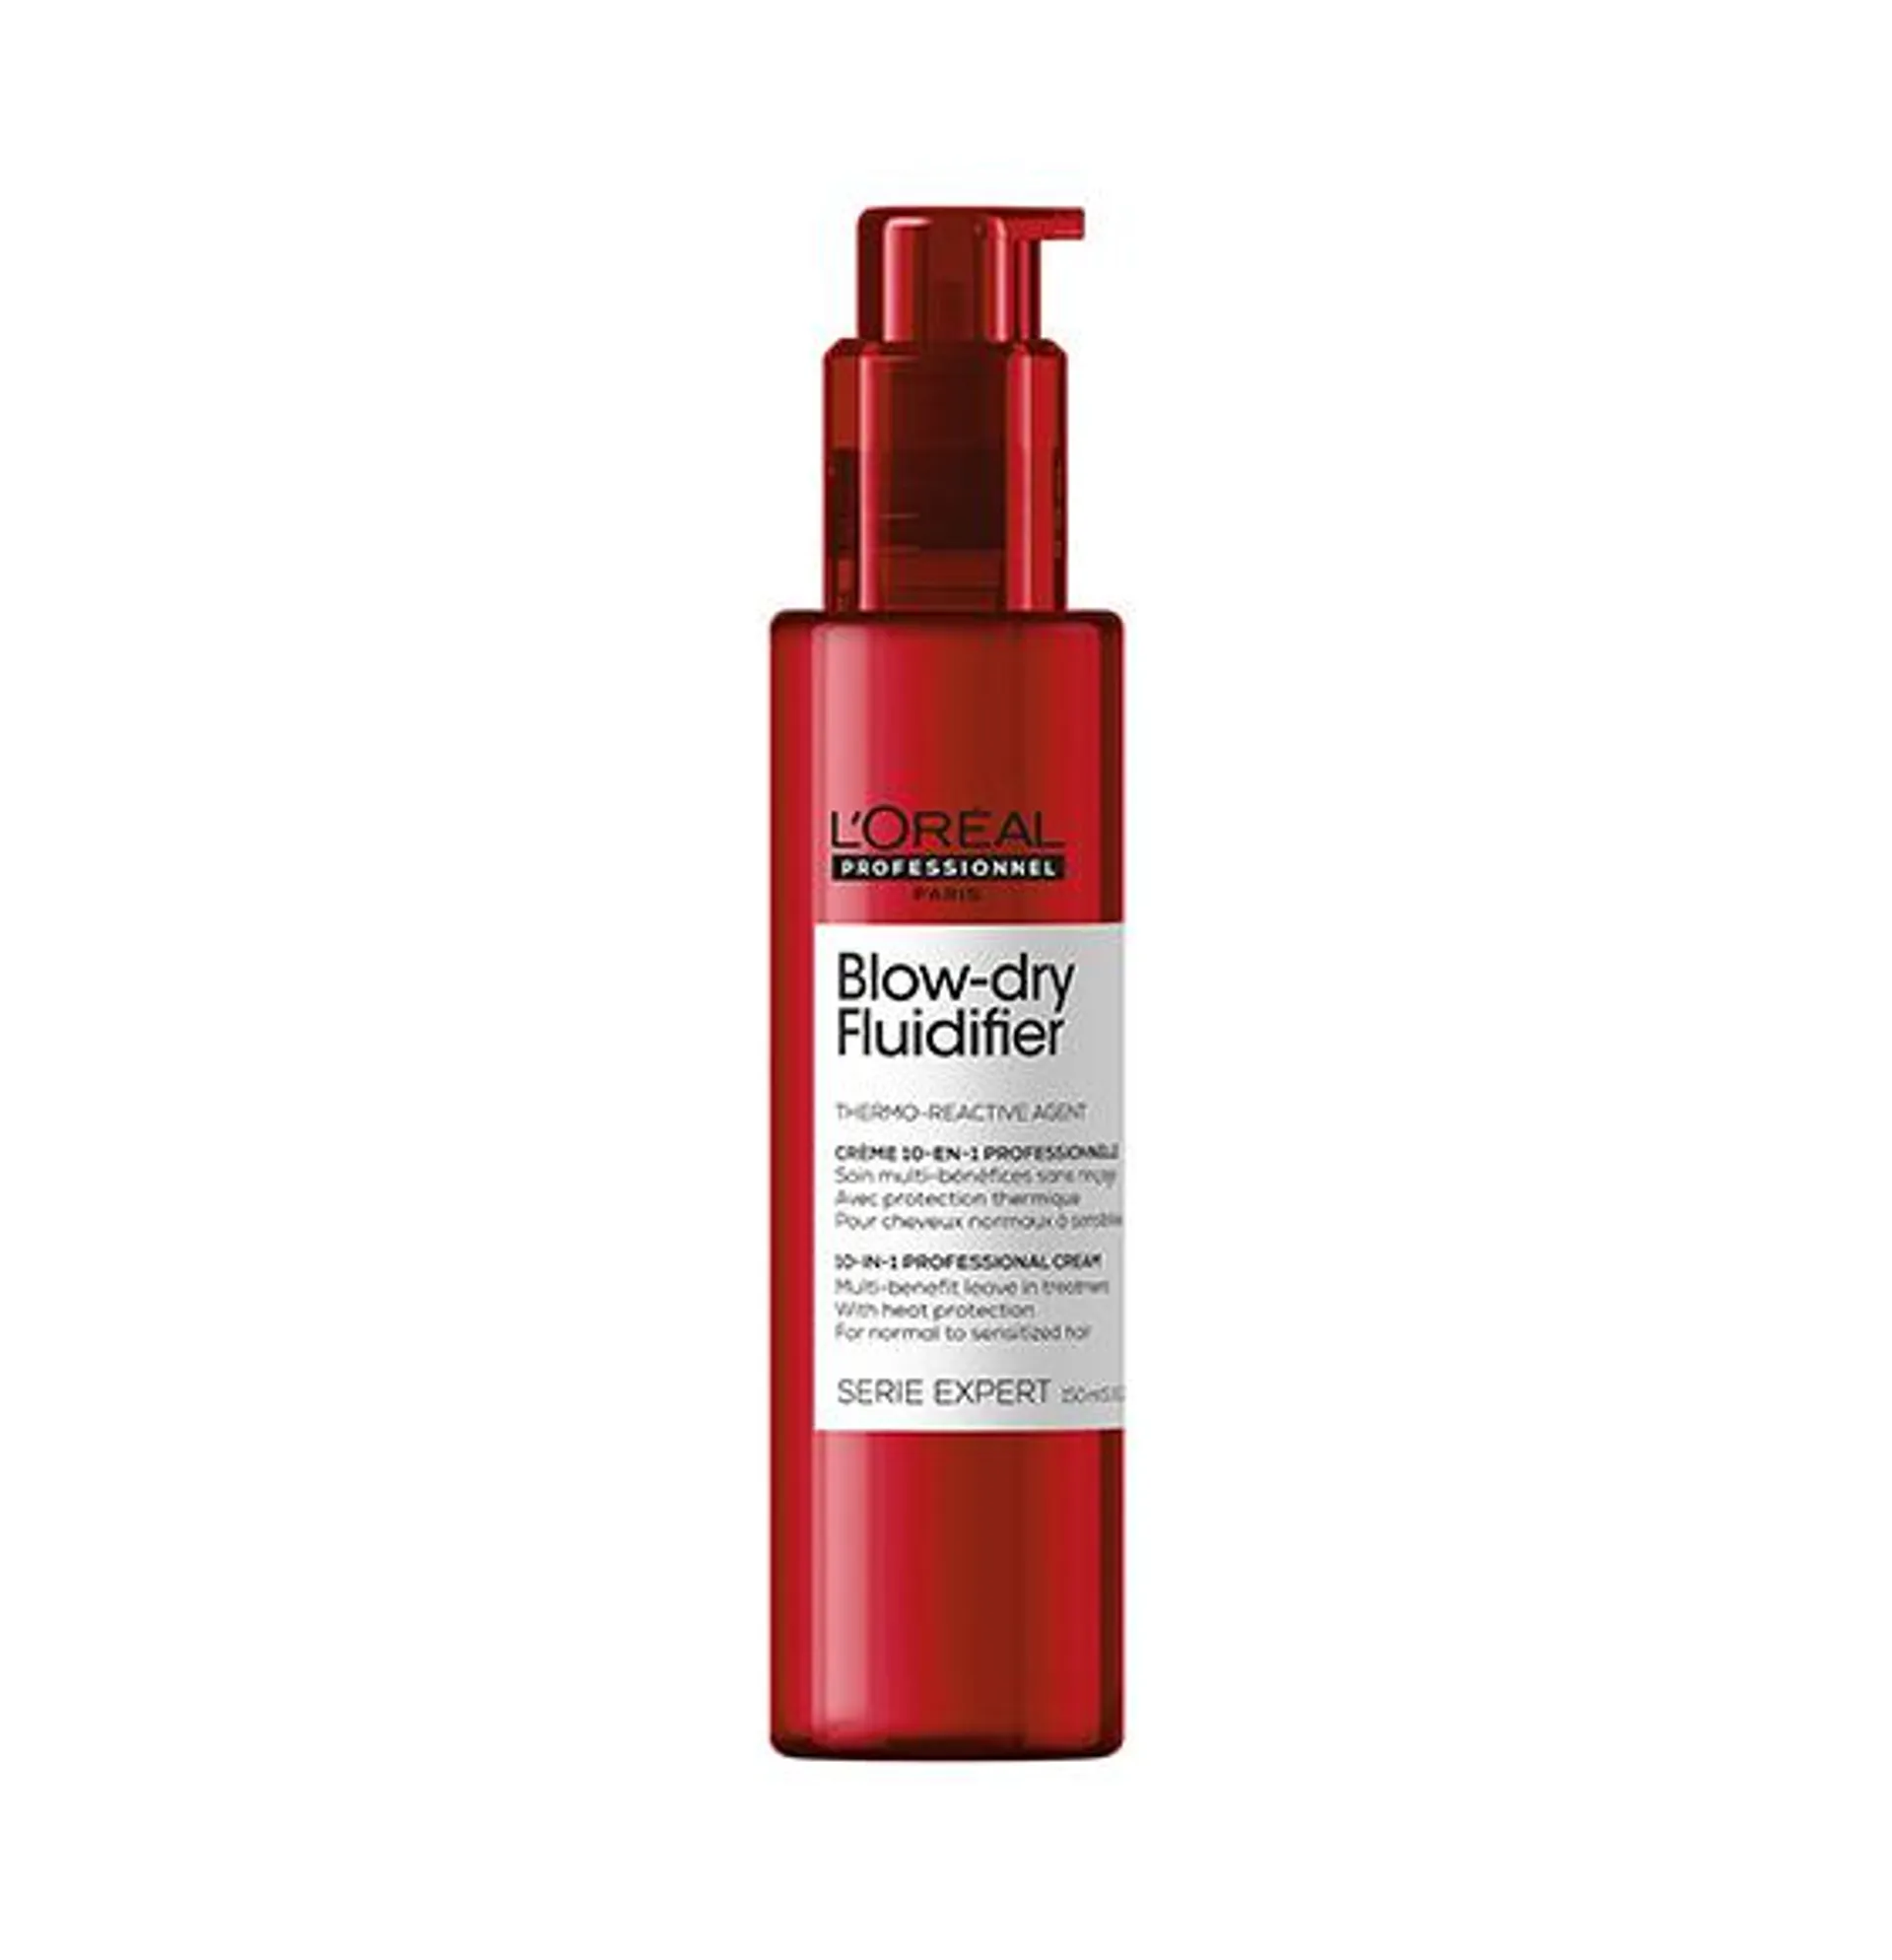 L'Oréal Professionnel Serie Expert Blow-dry Fluidifier Multi-benefit Blowdry Cream